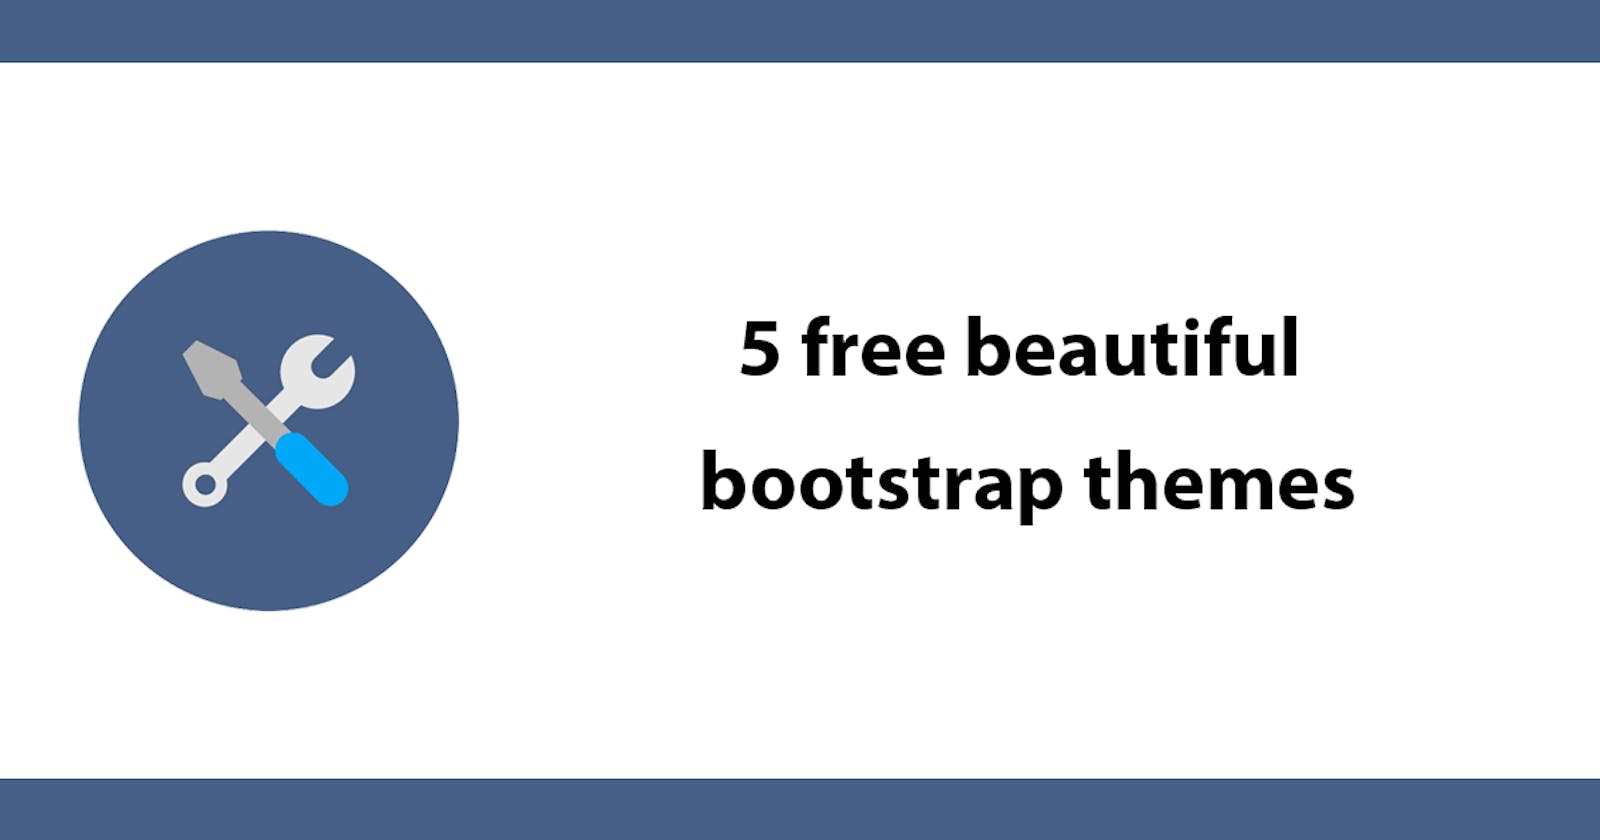 5 free beautiful bootstrap themes